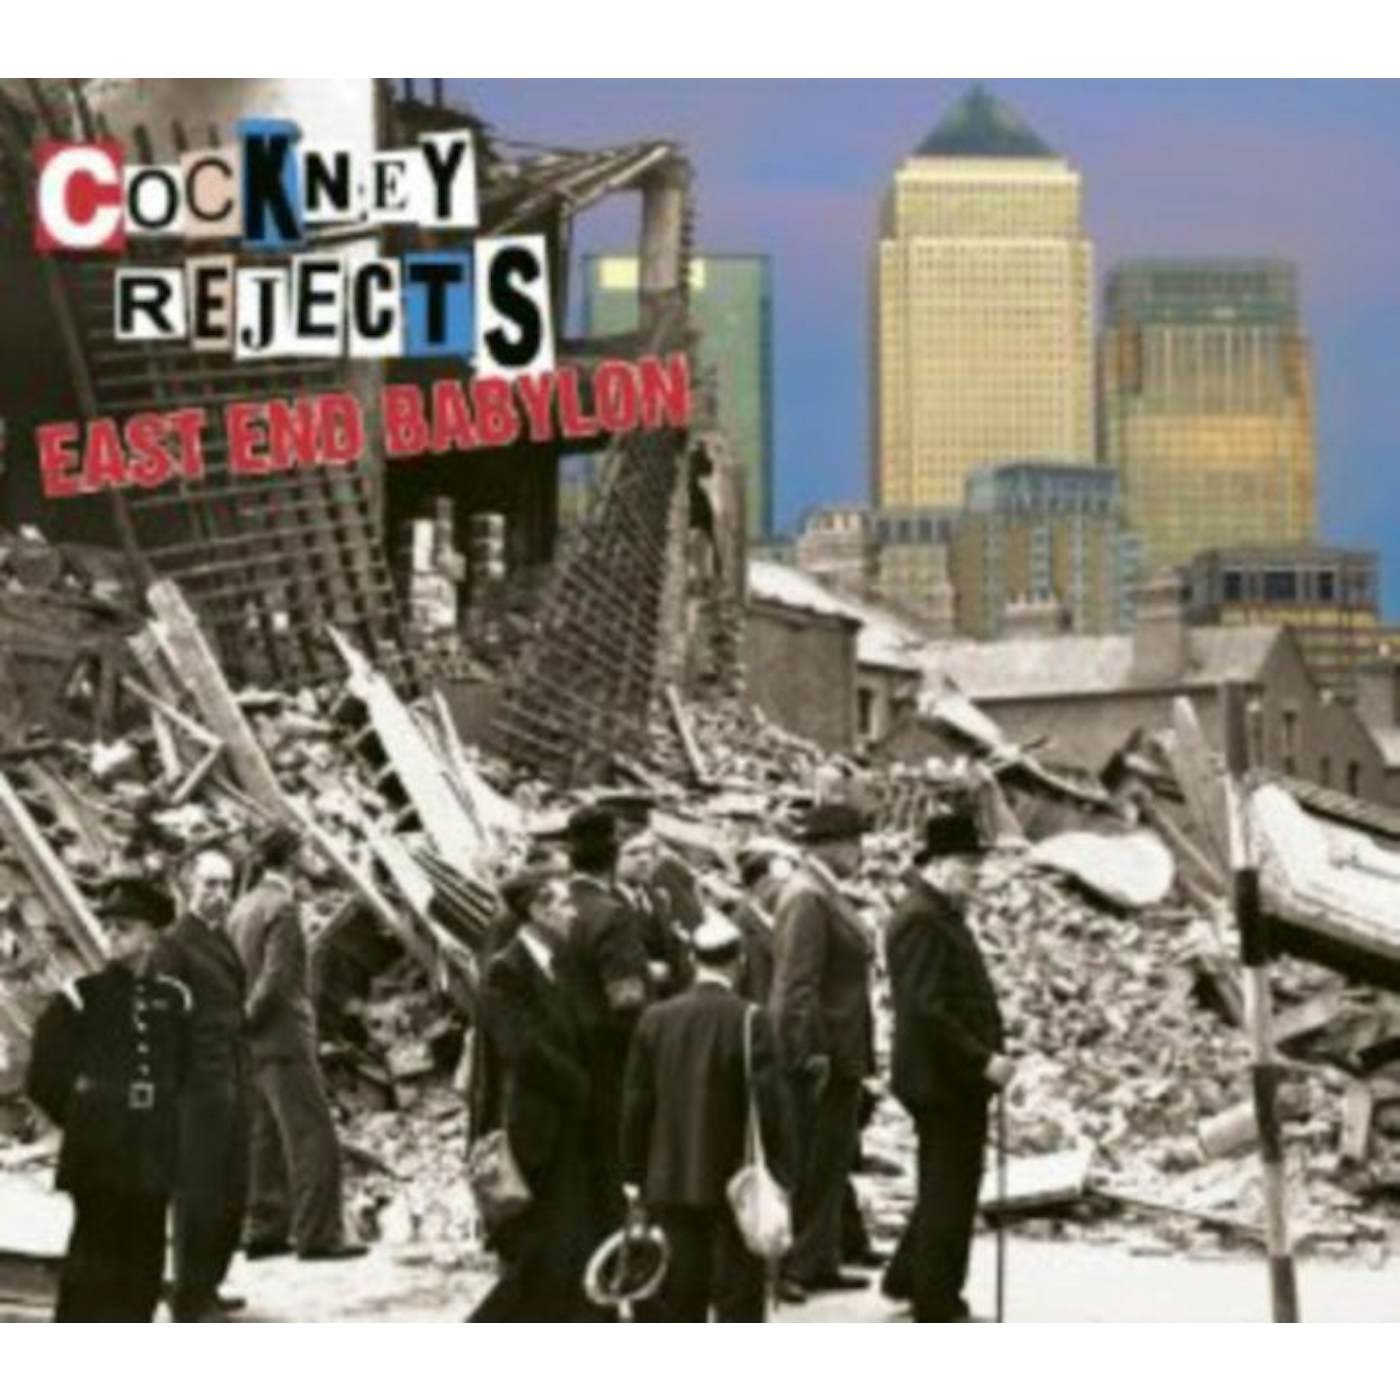 Cockney Rejects CD - East End Babylon